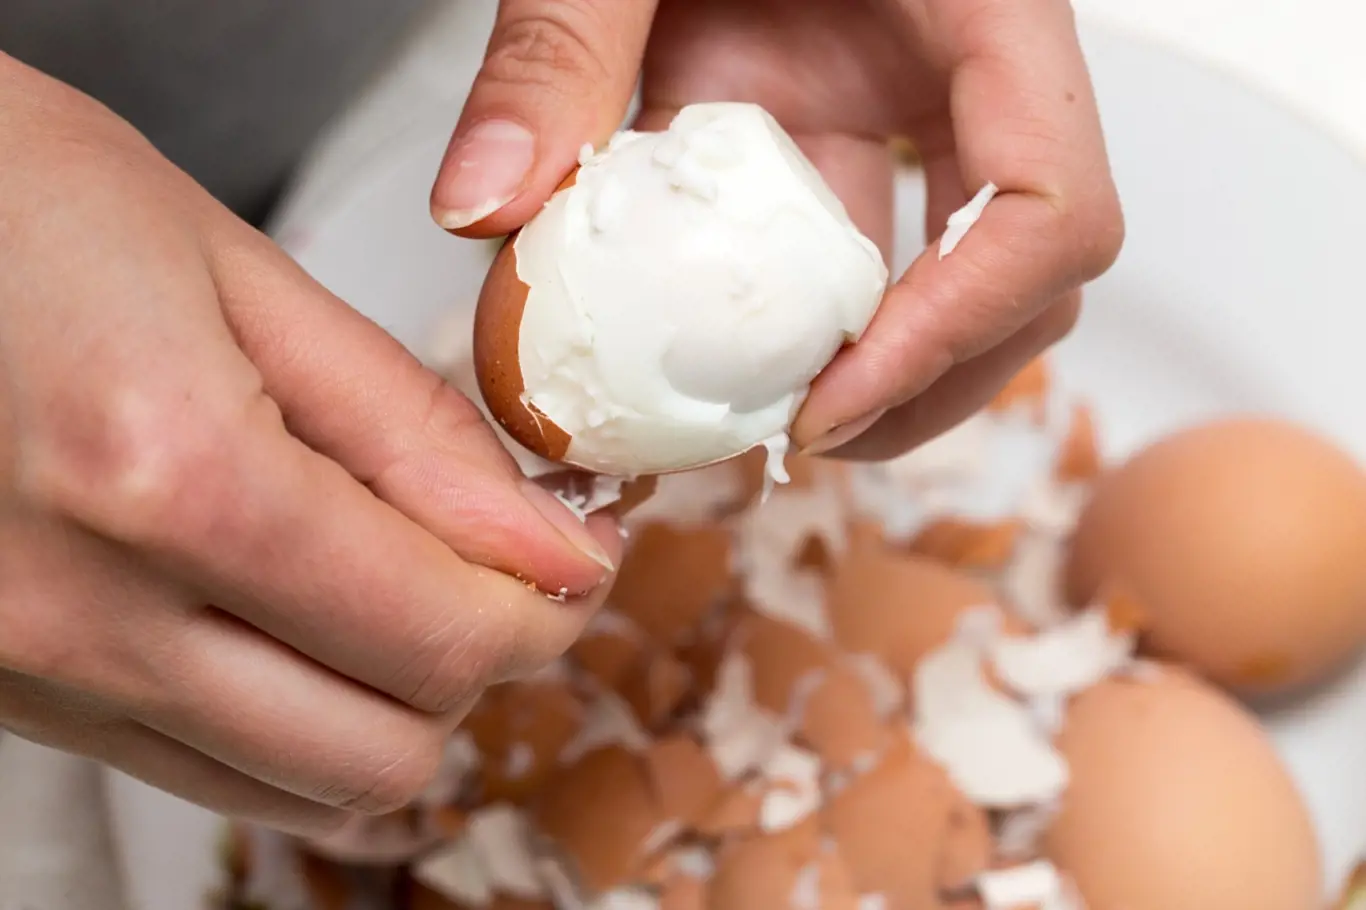 Zajímá vás, jak jednoduše a rychle oloupat vařená vejce? Způsobů je hned několik.